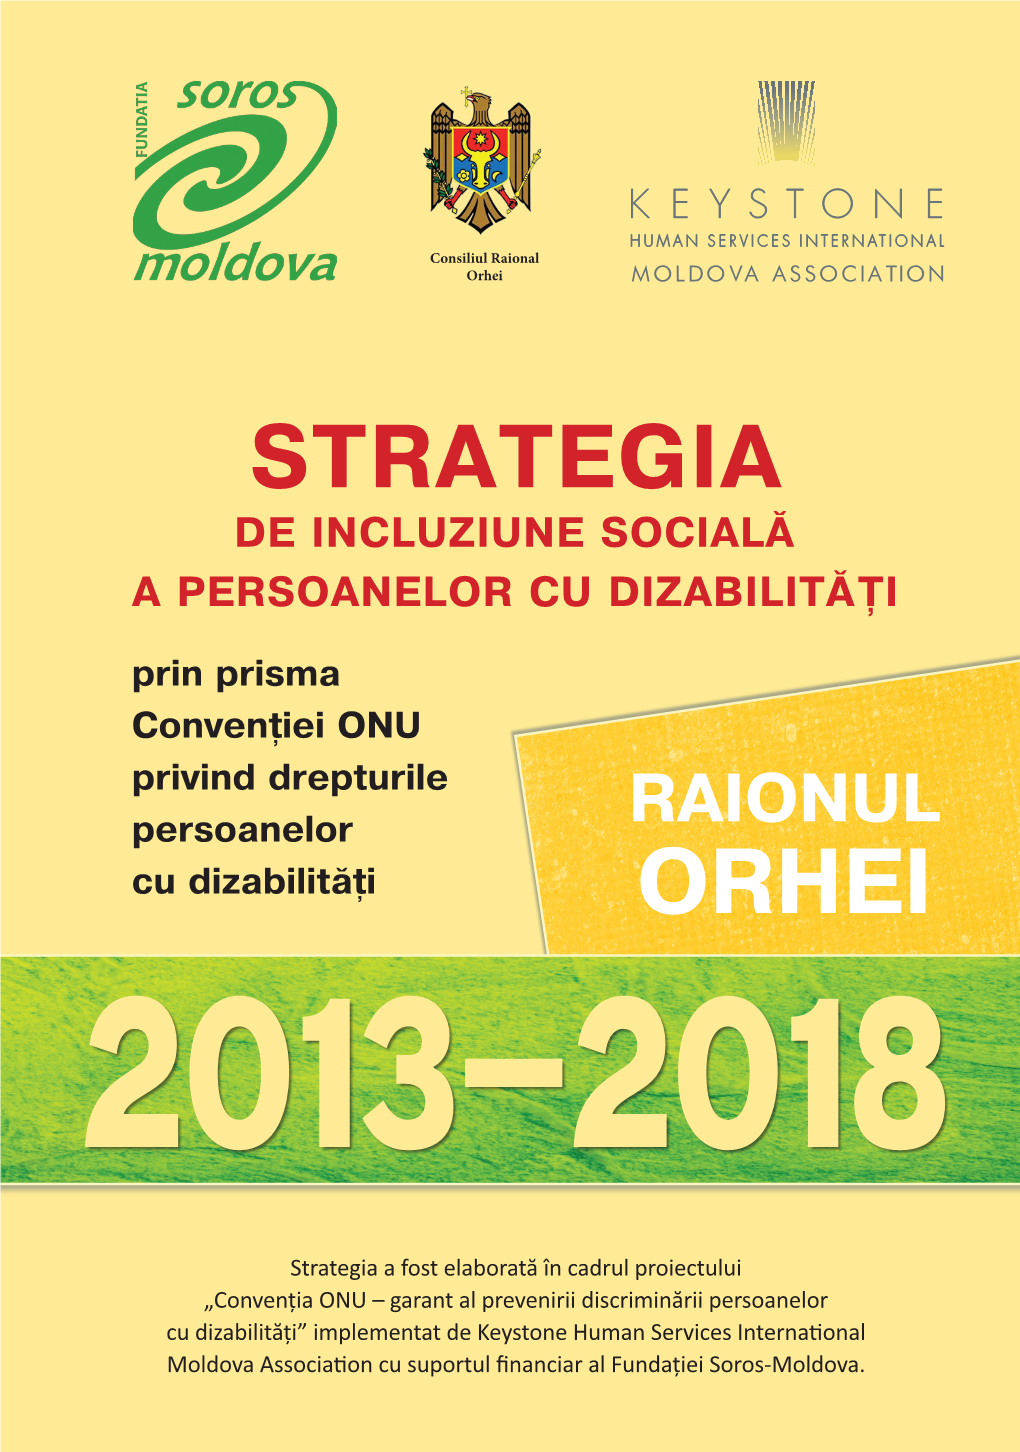 STRATEGIA DE INCLUZIUNE SOCIALĂ a PERSOANELOR CU DIZABILITĂŢI ÎN RAIONUL Orhei 2013-2018